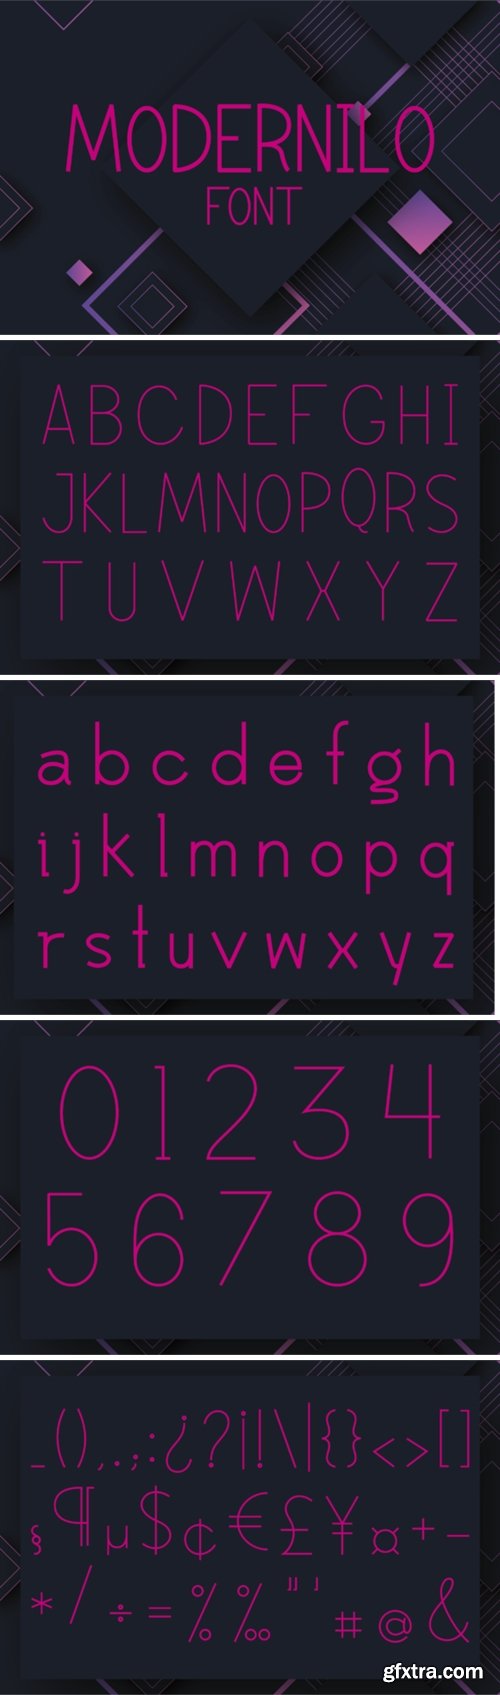 Modernilo Font